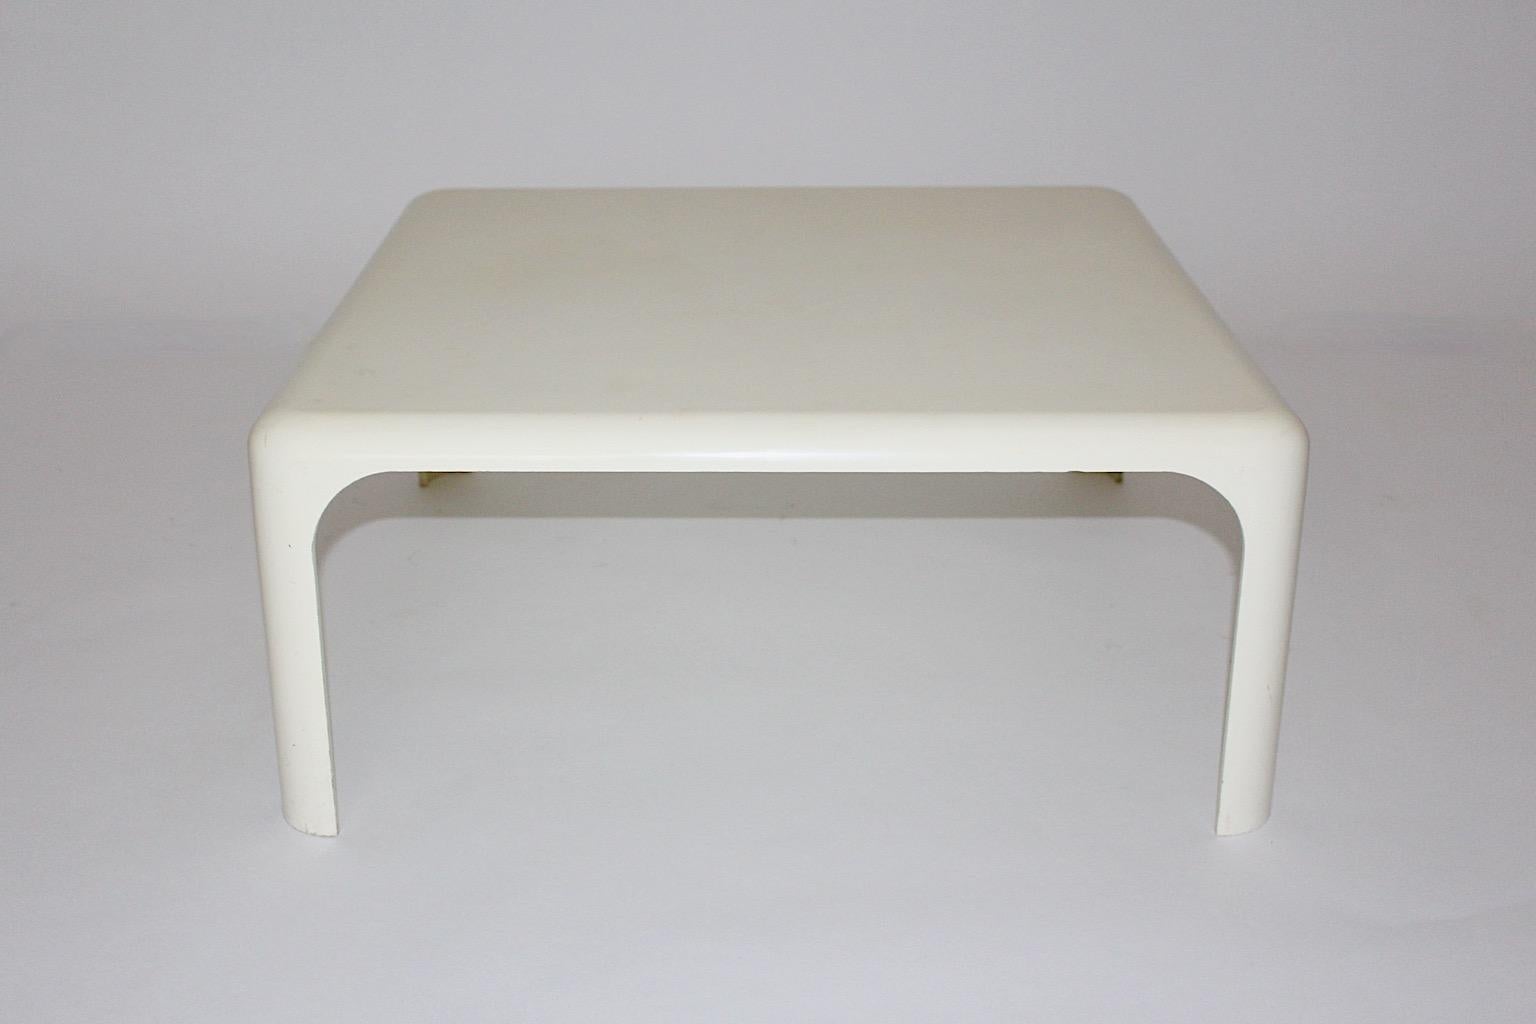 Table de canapé rectangulaire vintage de l'âge de l'espace modèle Demetrio 70 en plastique de couleur blanche par Vico Magistretti, Italie des années 1960.
Une table de canapé ou table d'appoint iconique et authentique de forme rectangulaire en